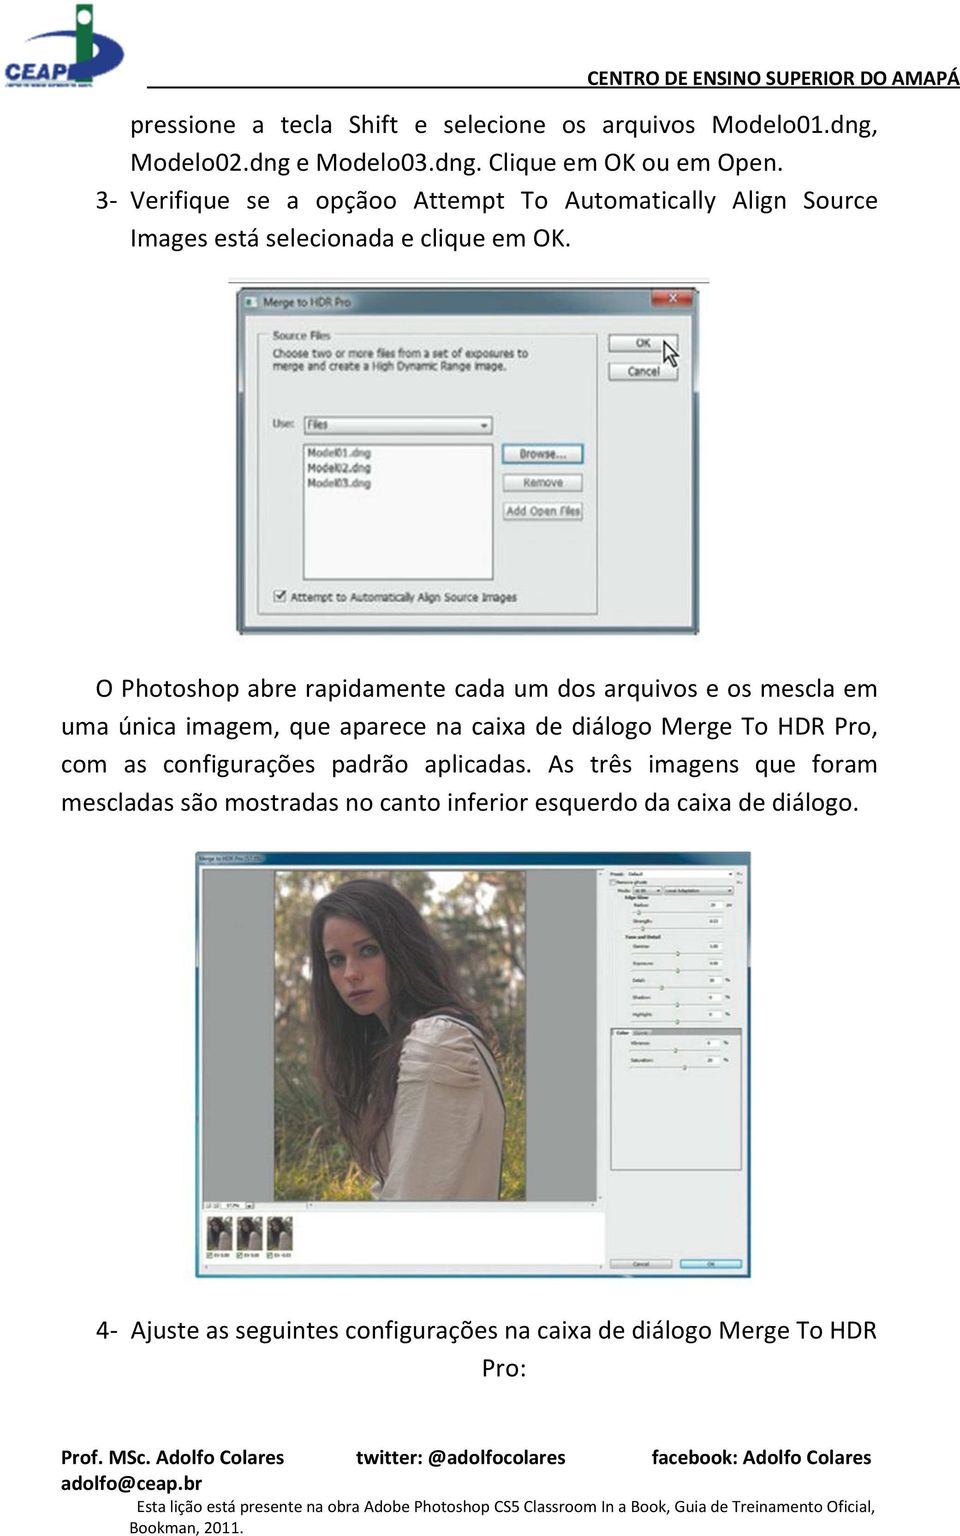 O Photoshop abre rapidamente cada um dos arquivos e os mescla em uma única imagem, que aparece na caixa de diálogo Merge To HDR Pro, com as